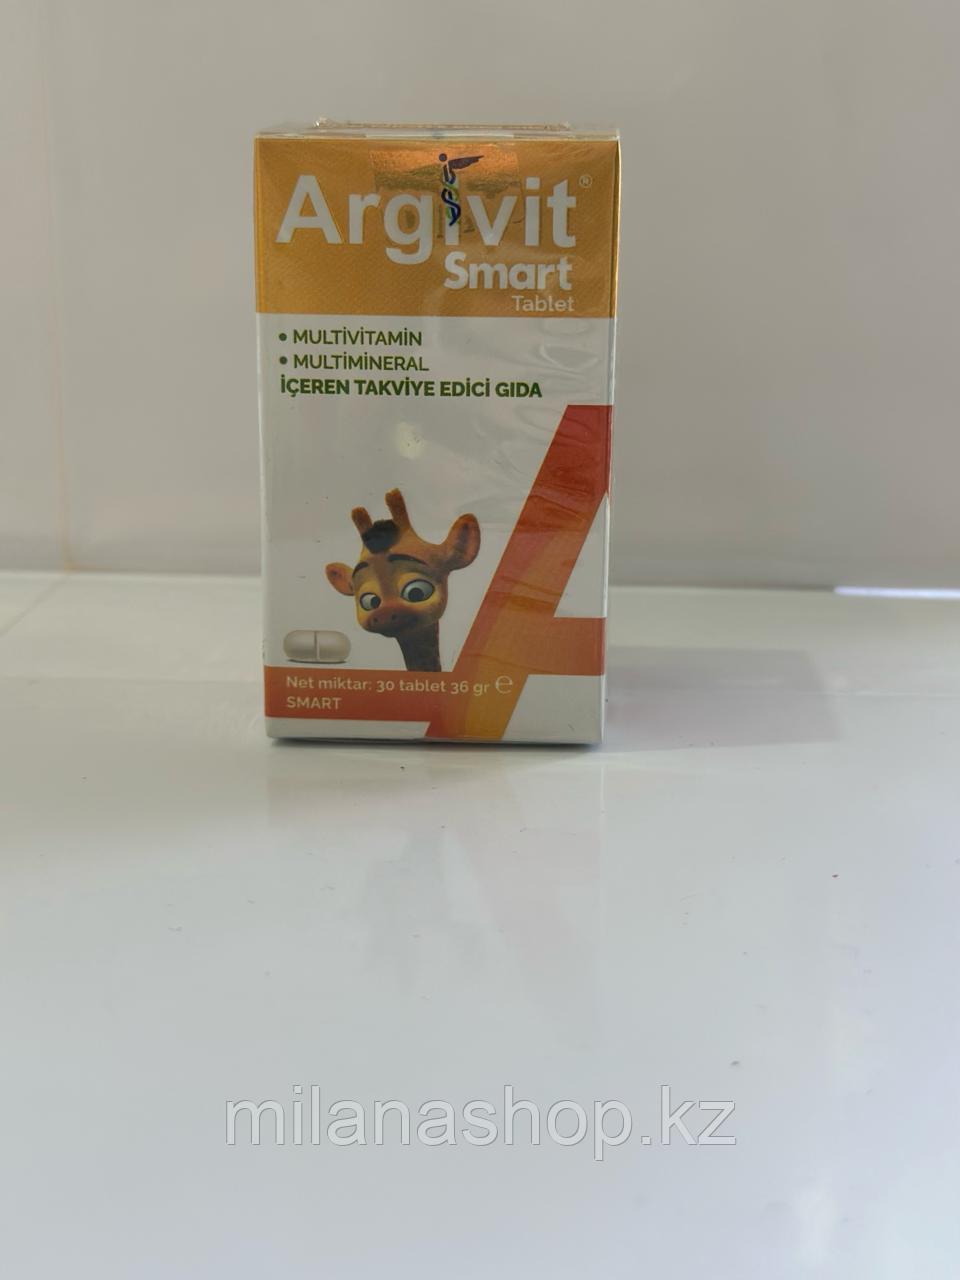 Argivit Smart ( Аргивит ) 30 таблеток Турция